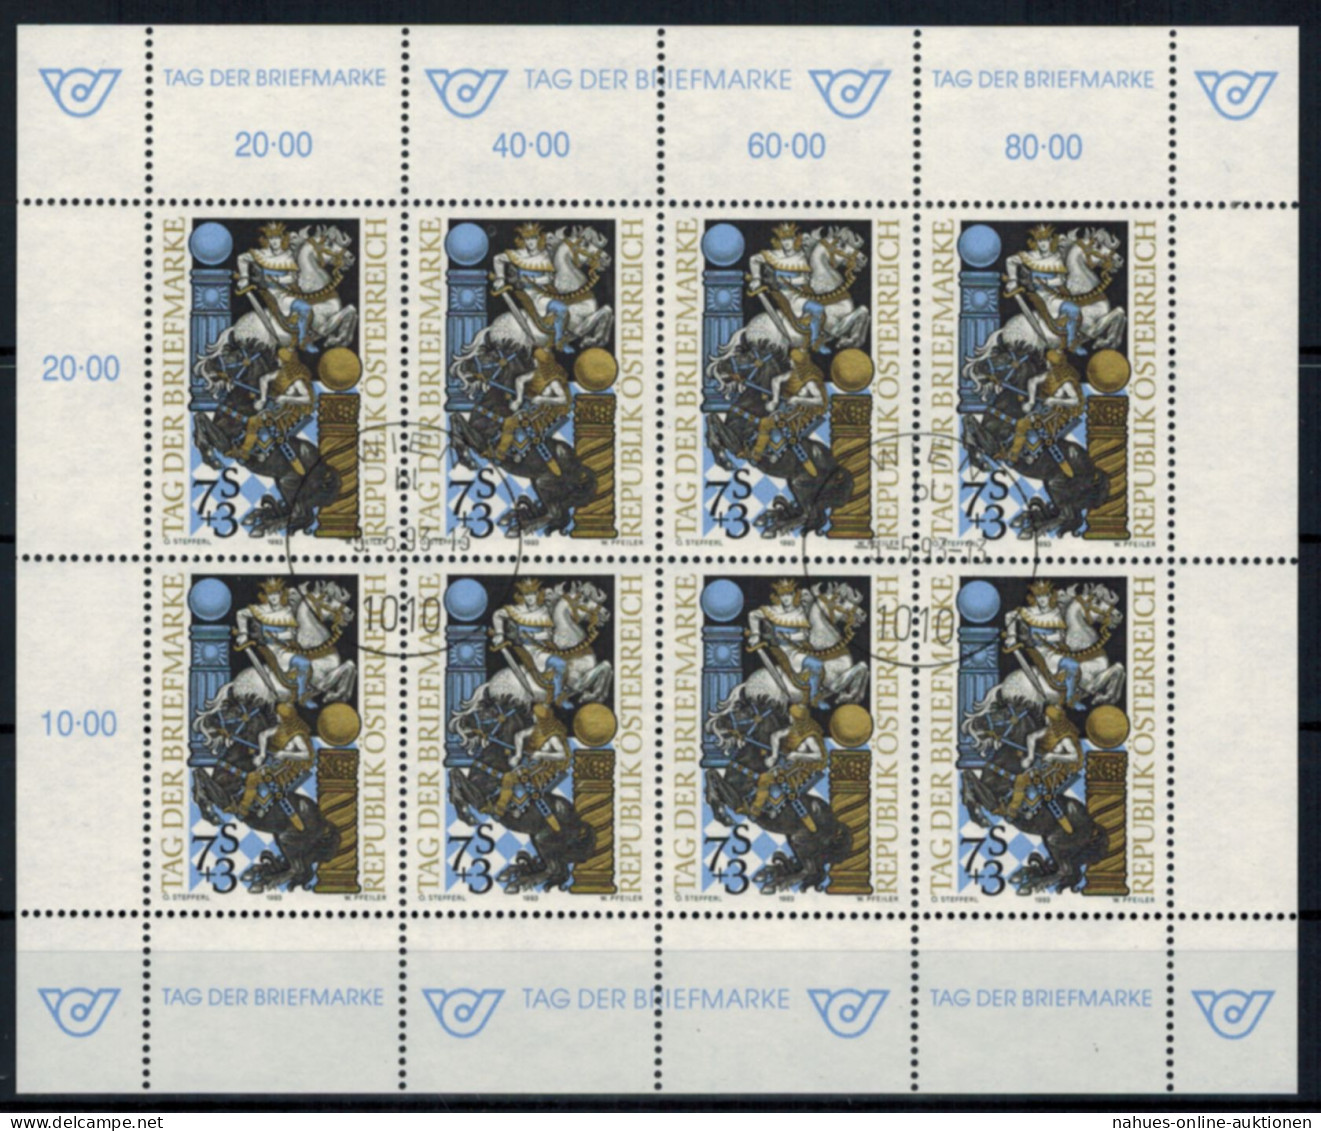 Österreich Kleinbogen Tag Der Briefmarke 2097 Philatelie Ersttagsstempel 1993 - Briefe U. Dokumente